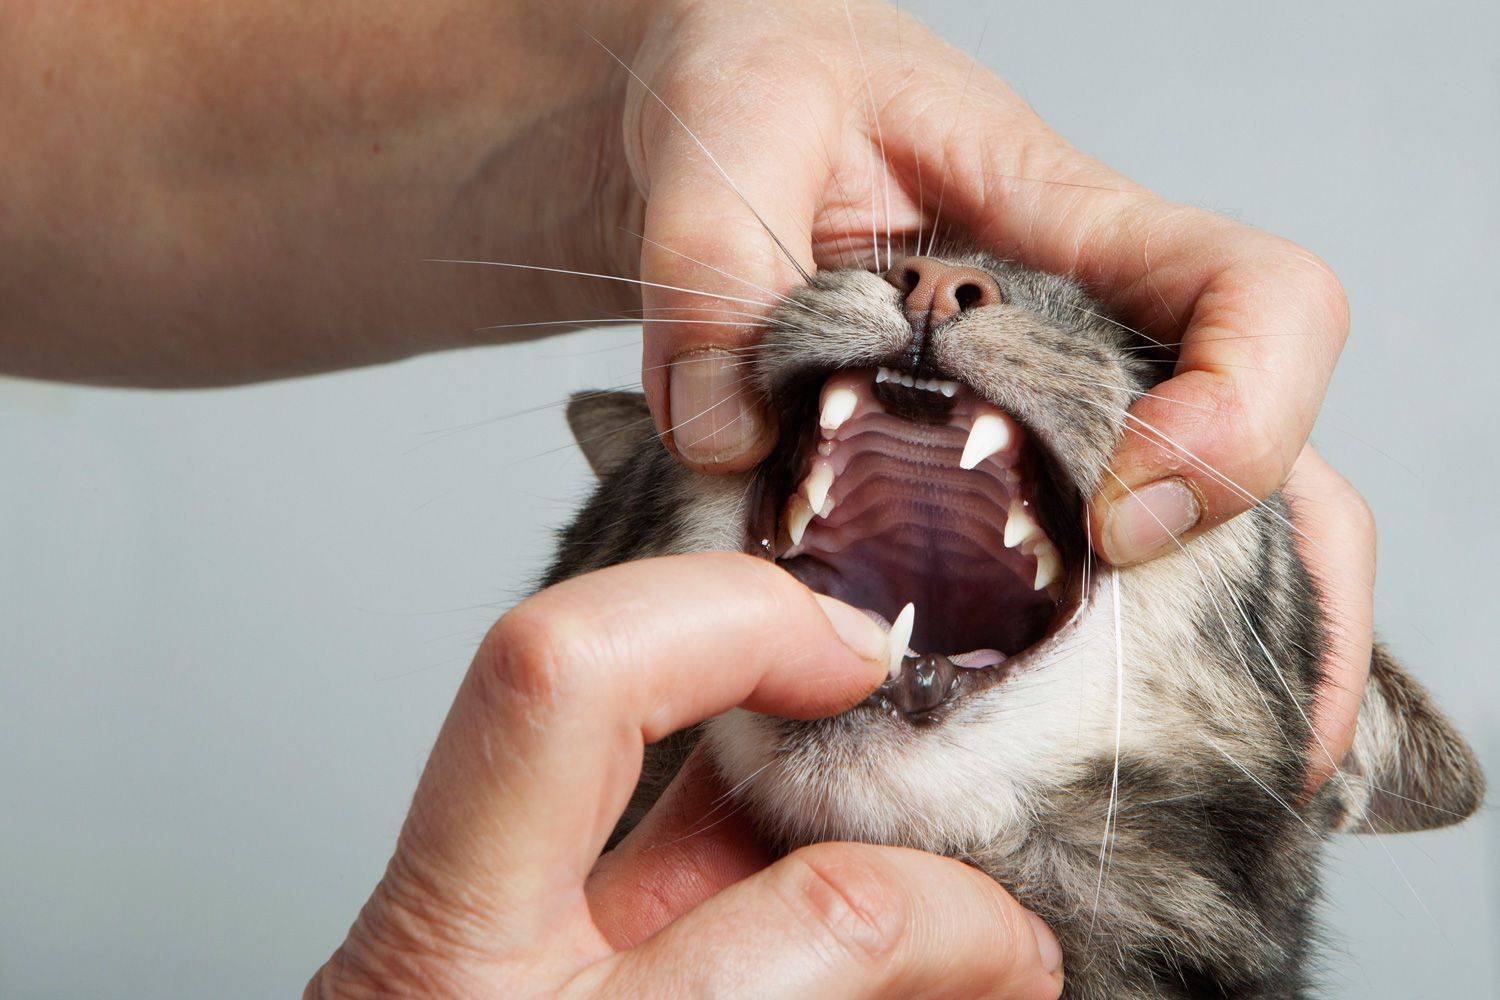 Простуда у кошек: симптомы и лечение, причины заболевания, как определить, передается ли человеку